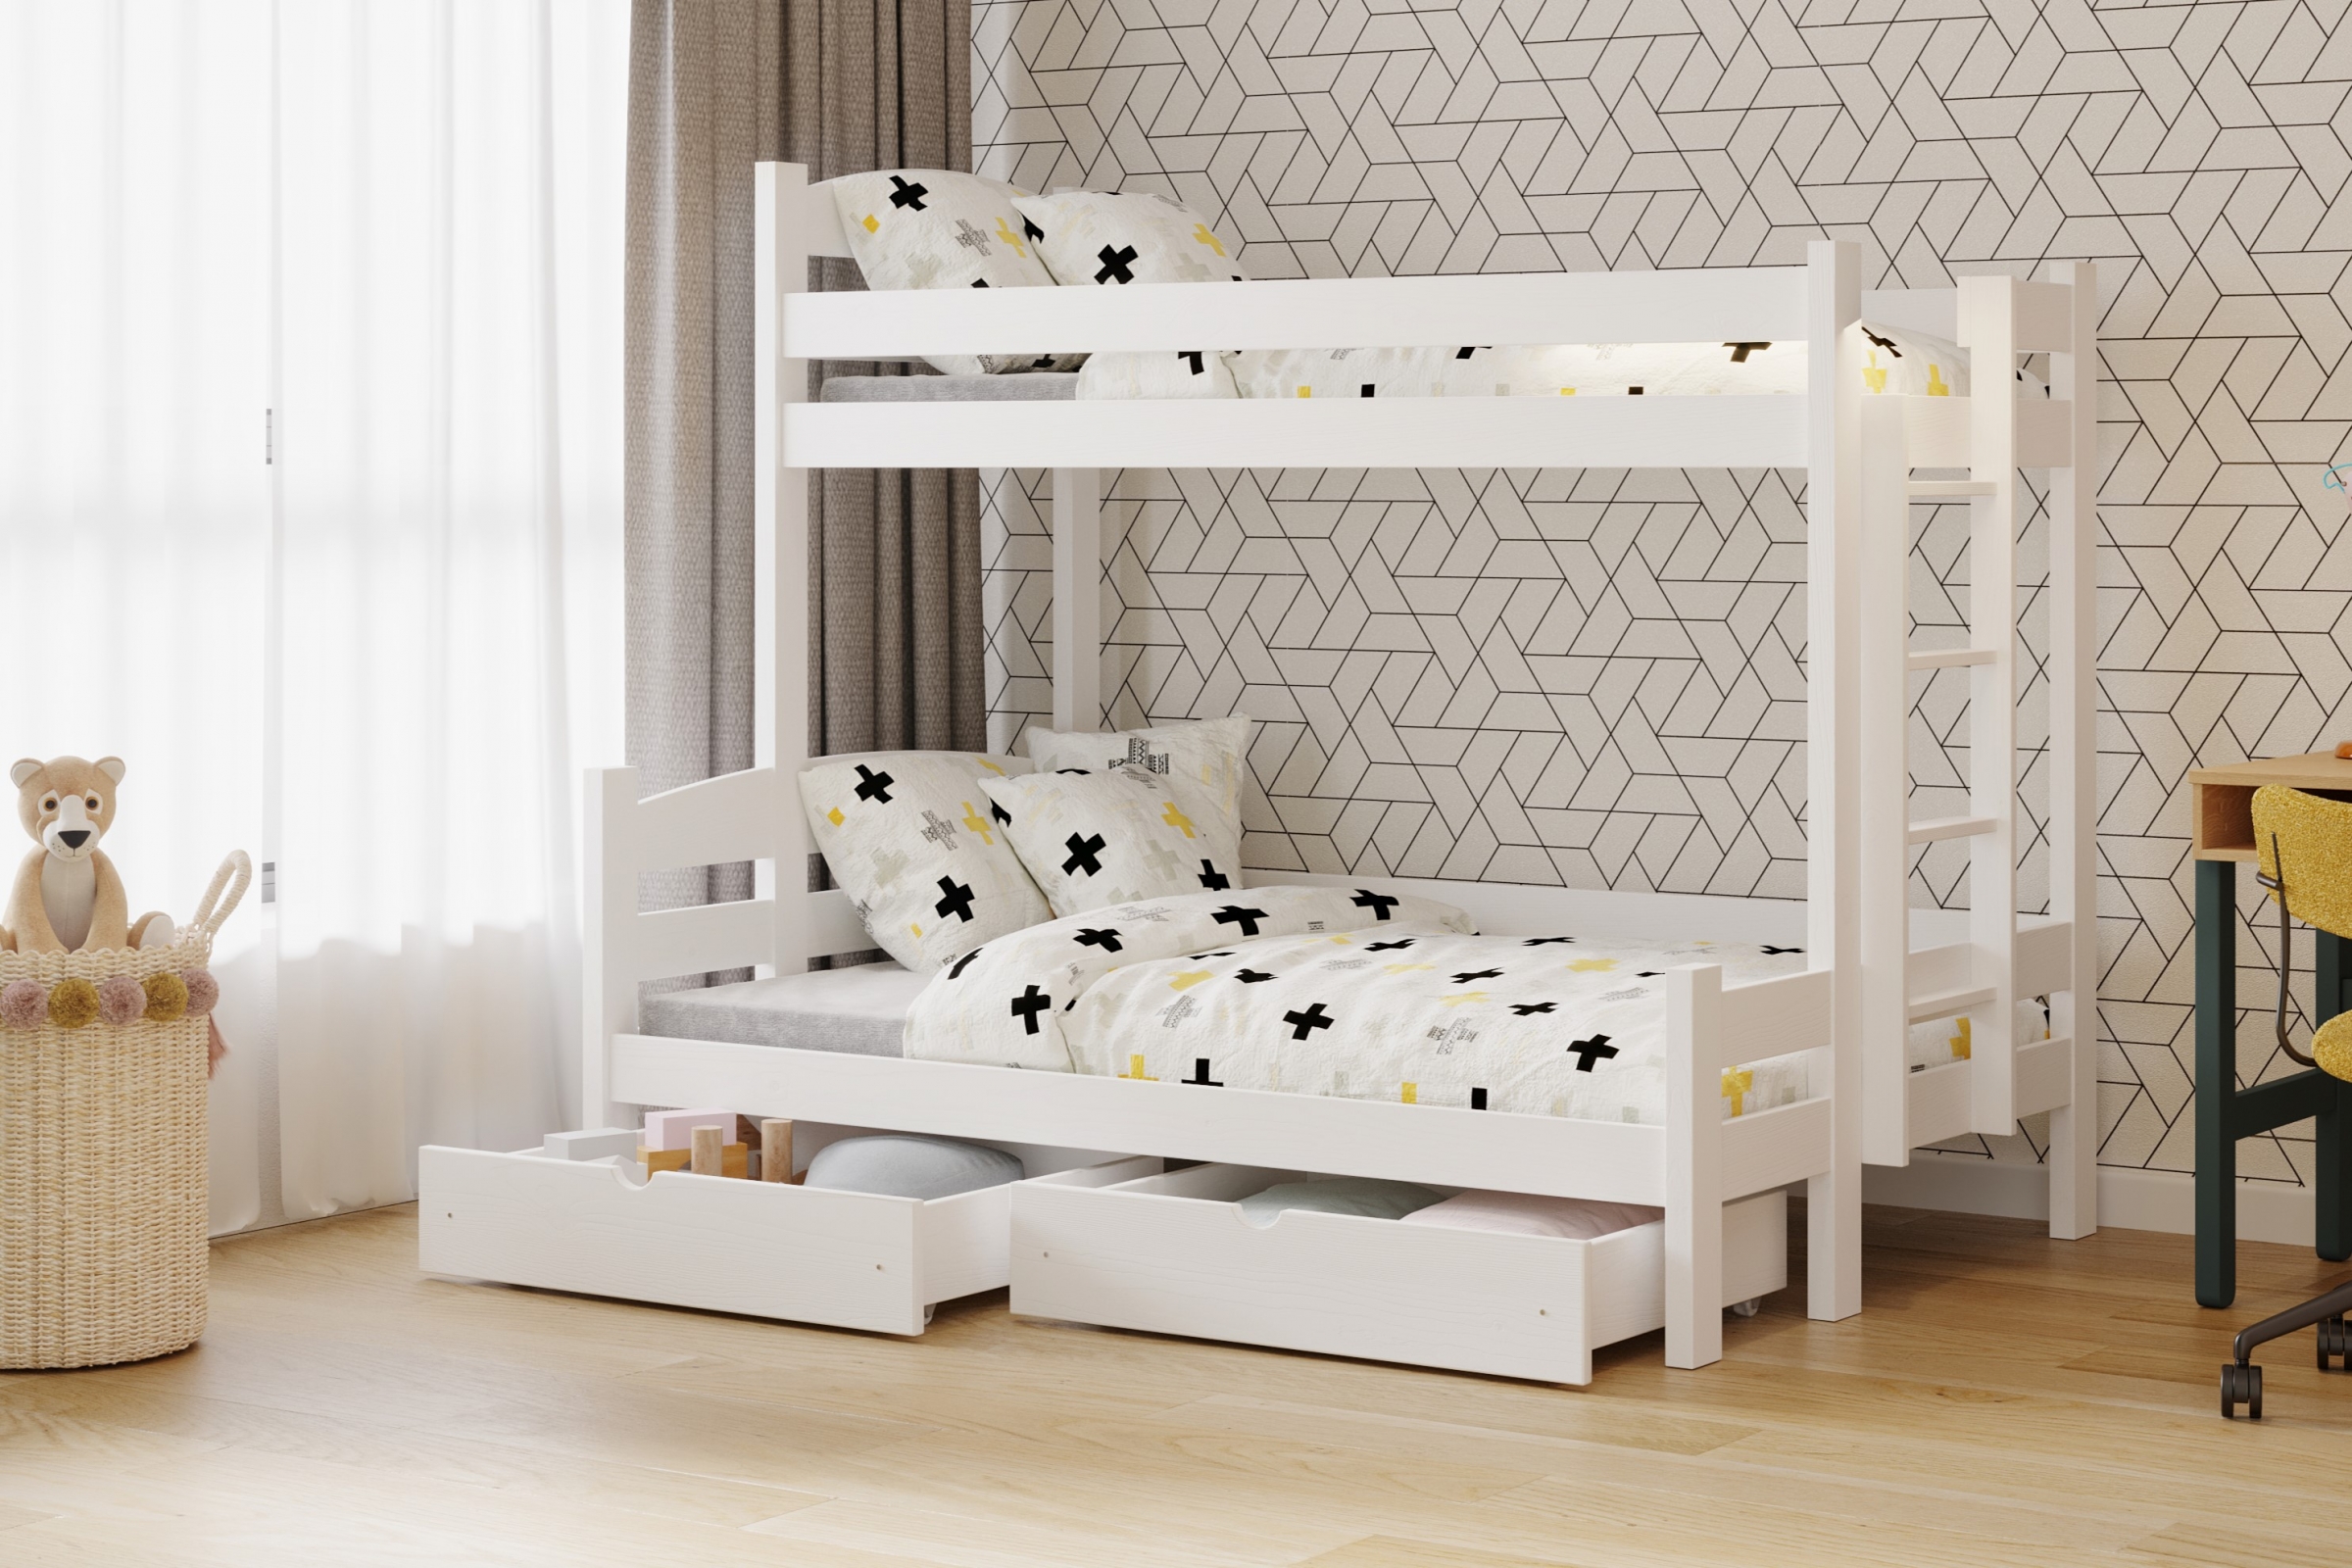 Lovic emeletes ágy, fiókokkal, bal oldali - 80x200 cm/120x200 cm - fehér  Emeletes ágy fiokokkal Lovic - bialy - aranzacja